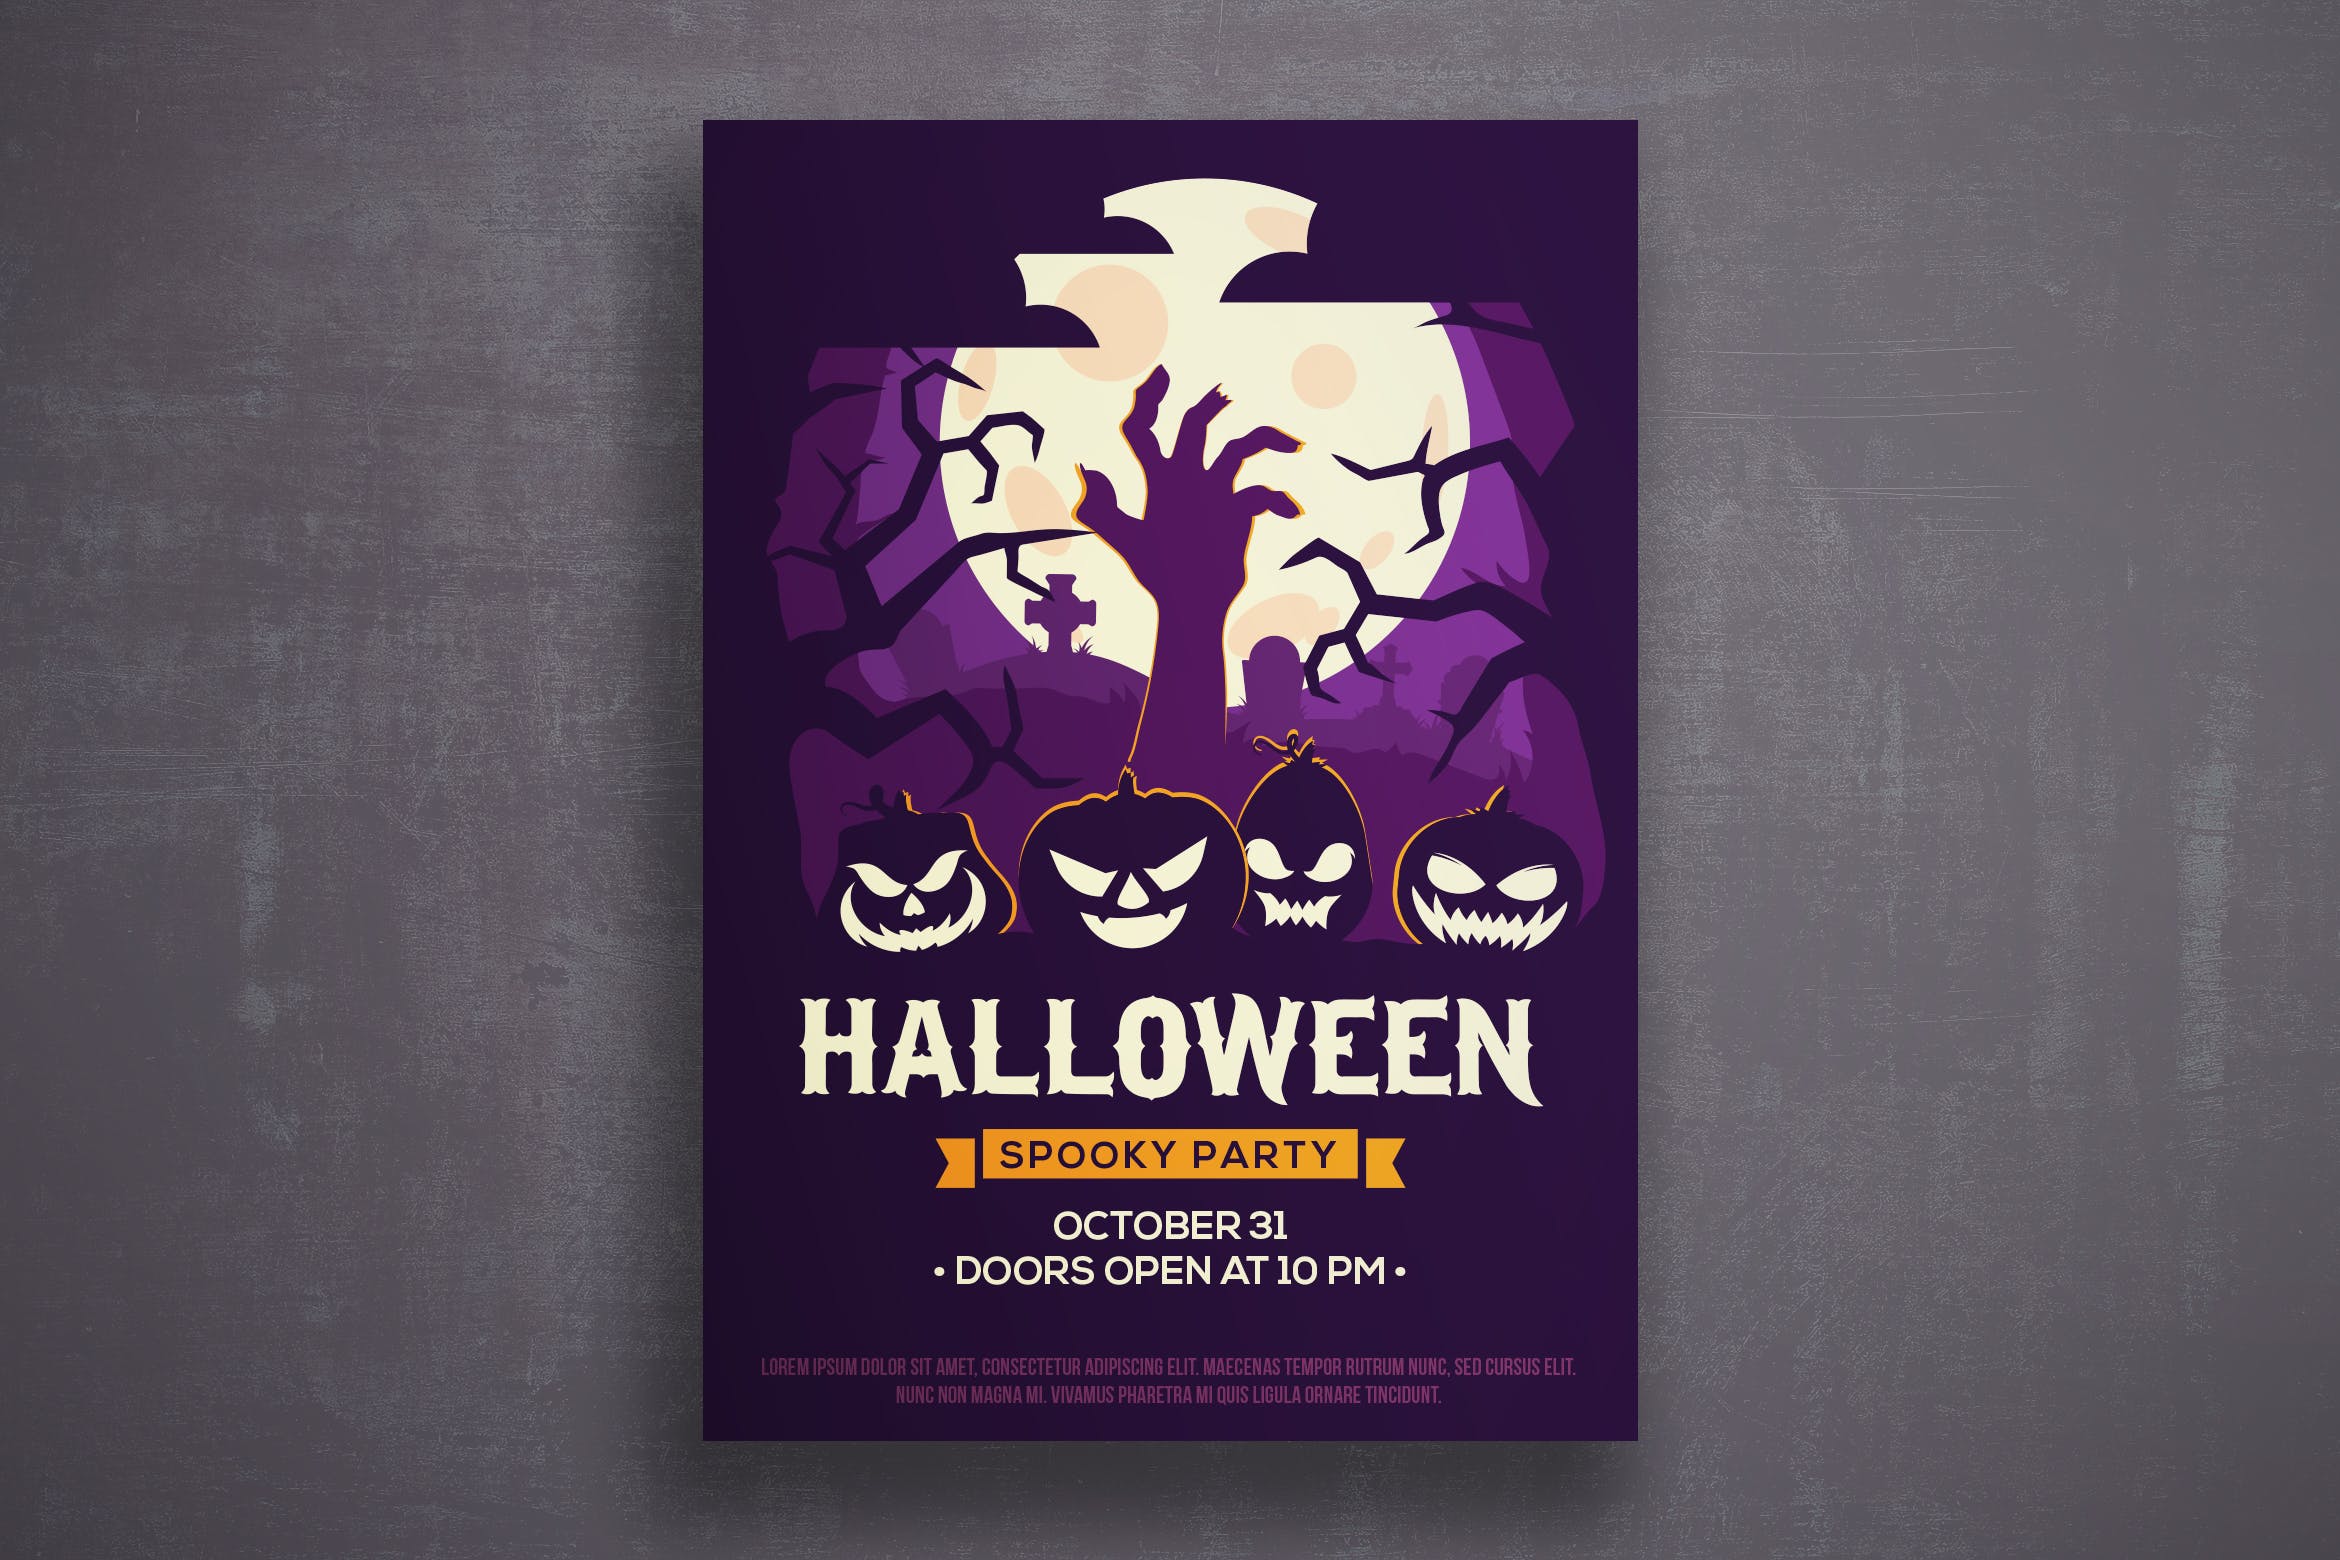 万圣节恐怖之夜活动邀请海报传单第一素材精选PSD模板v3 Halloween flyer template插图